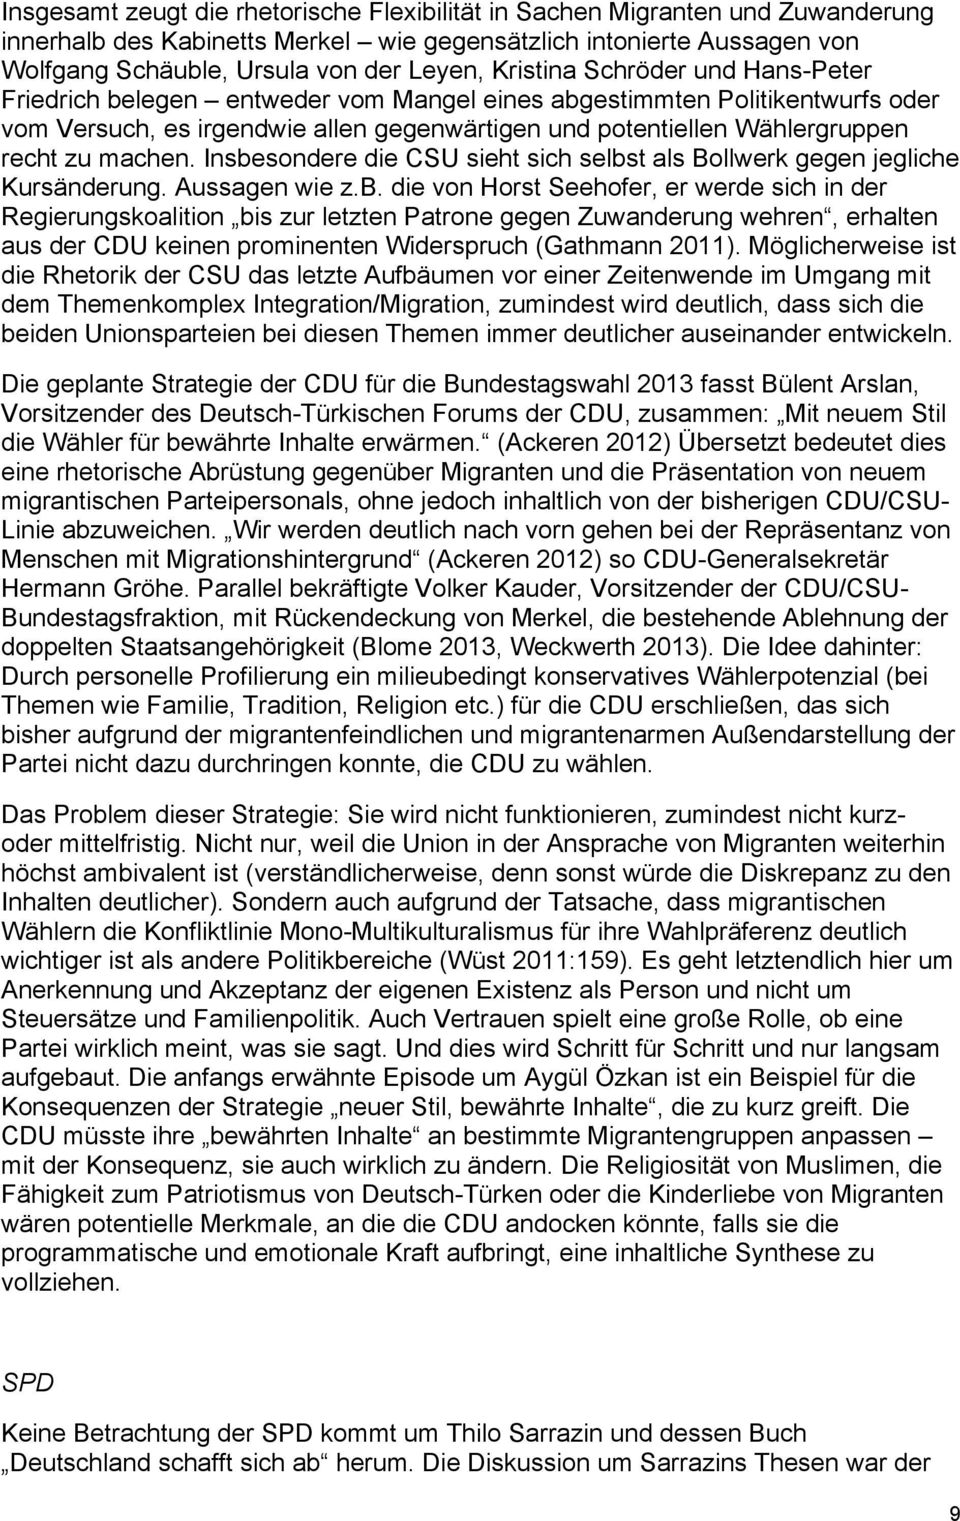 machen. Insbesondere die CSU sieht sich selbst als Bollwerk gegen jegliche Kursänderung. Aussagen wie z.b. die von Horst Seehofer, er werde sich in der Regierungskoalition bis zur letzten Patrone gegen Zuwanderung wehren, erhalten aus der CDU keinen prominenten Widerspruch (Gathmann 2011).